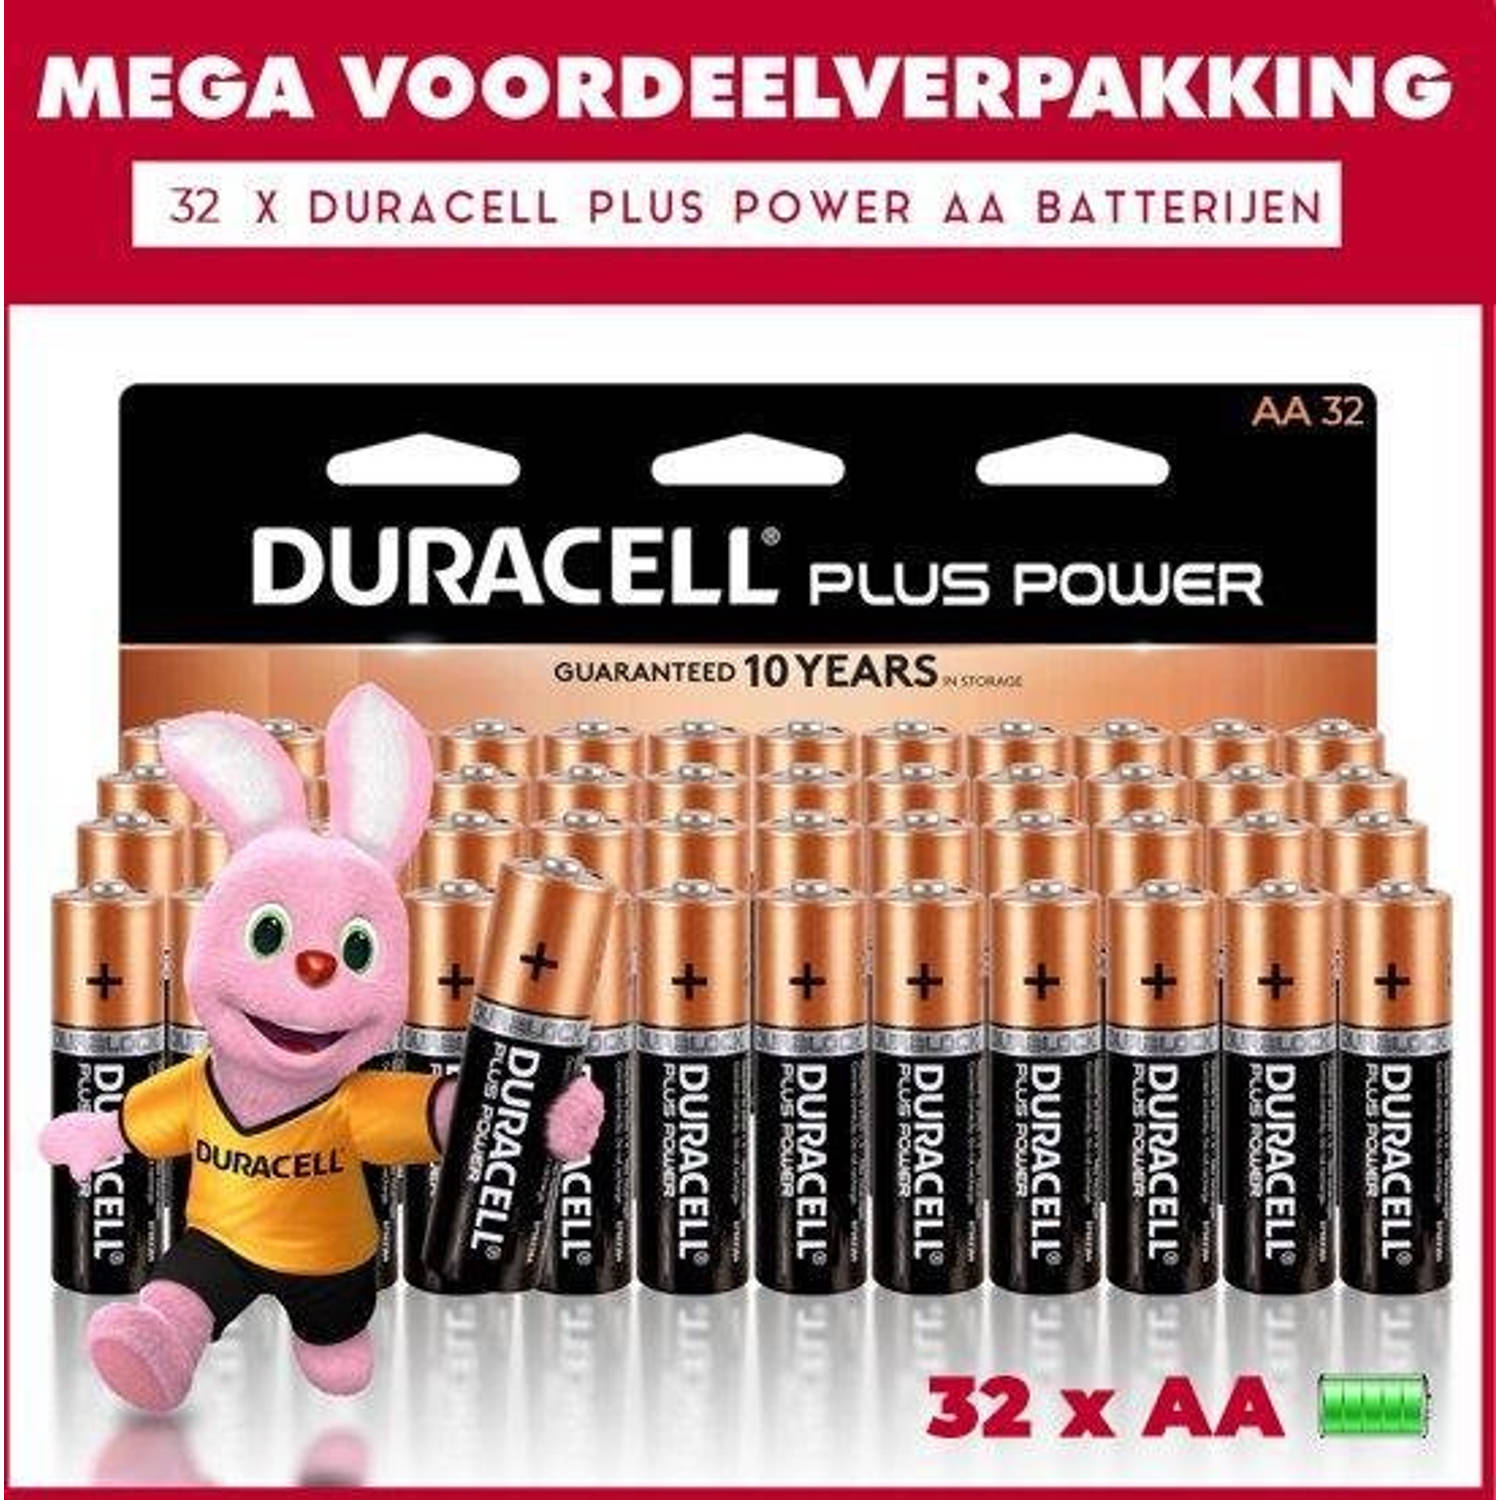 Duracell 32 X Aa Plus Power - Voordeelverpakking - 32 X Aa Batterijen